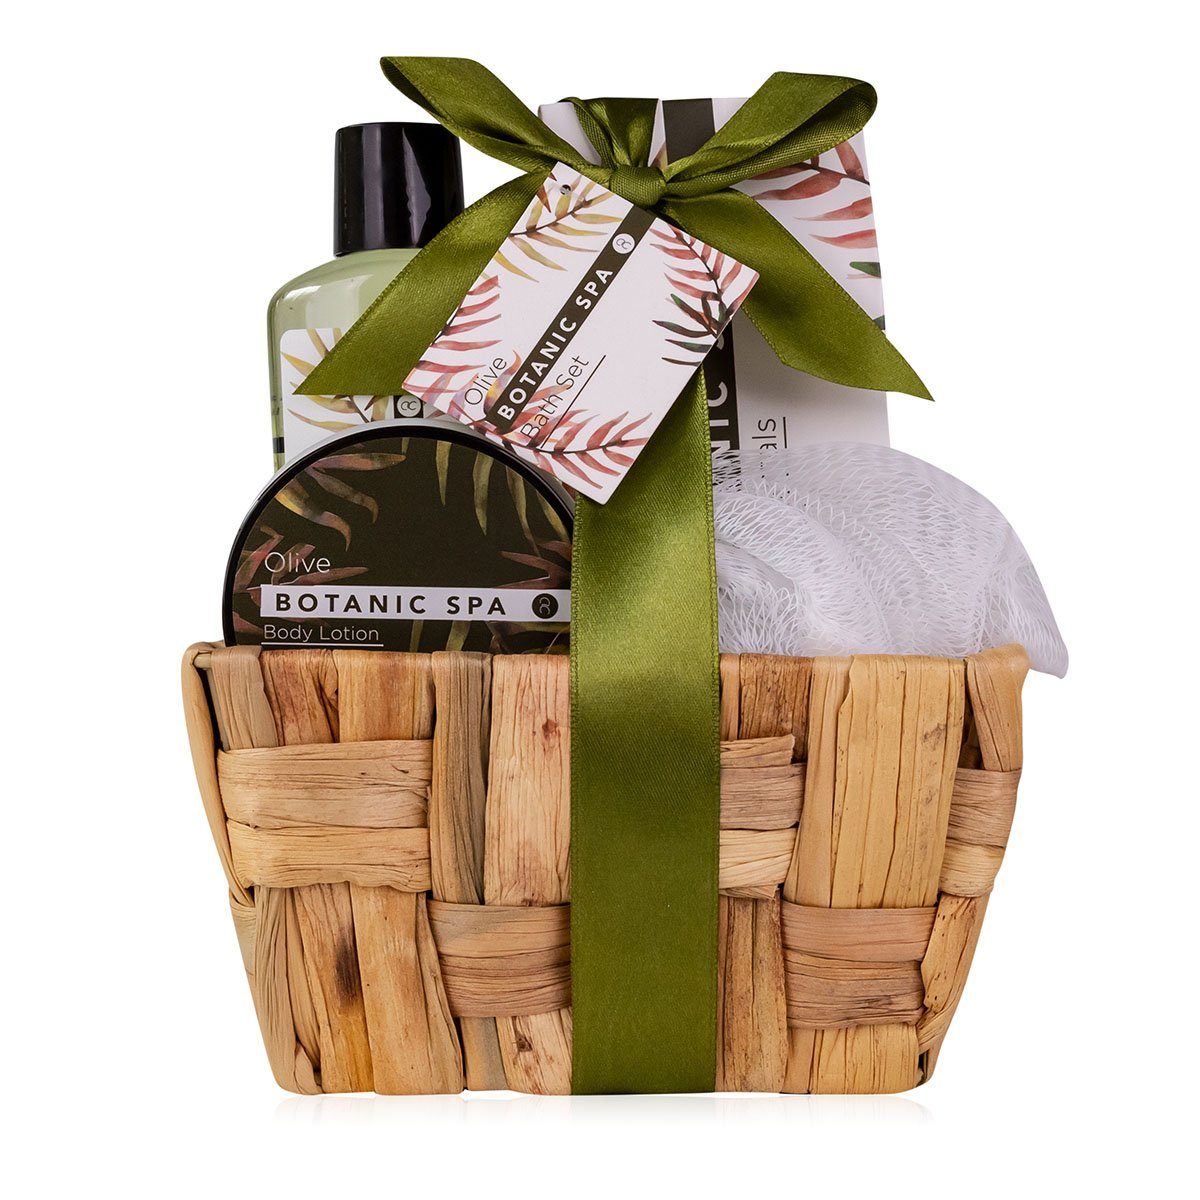 für Spa" Olive, Duft: Pflege-Geschenkset im verpackt Seegras-Körbchen "Olive ACCENTRA Verschenken direktes bereits Geschenkset